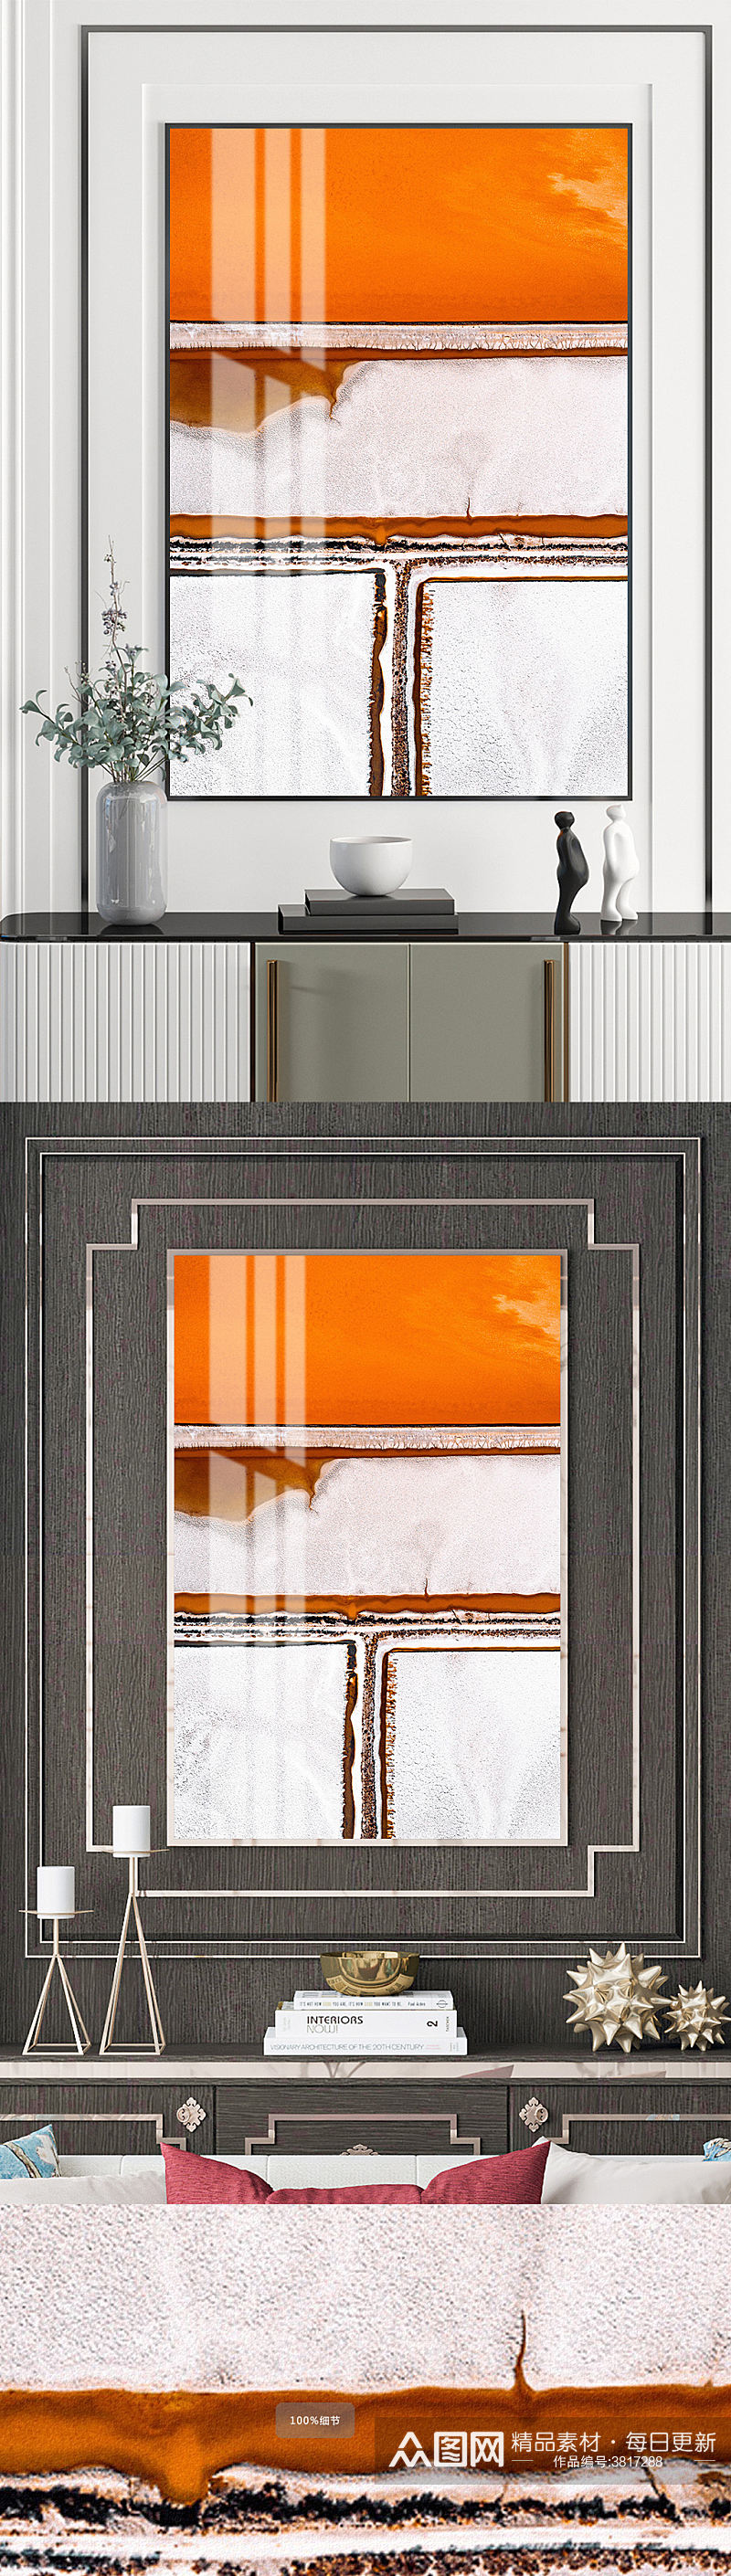 抽象爱马仕橙色水墨客厅装饰画晶瓷画素材